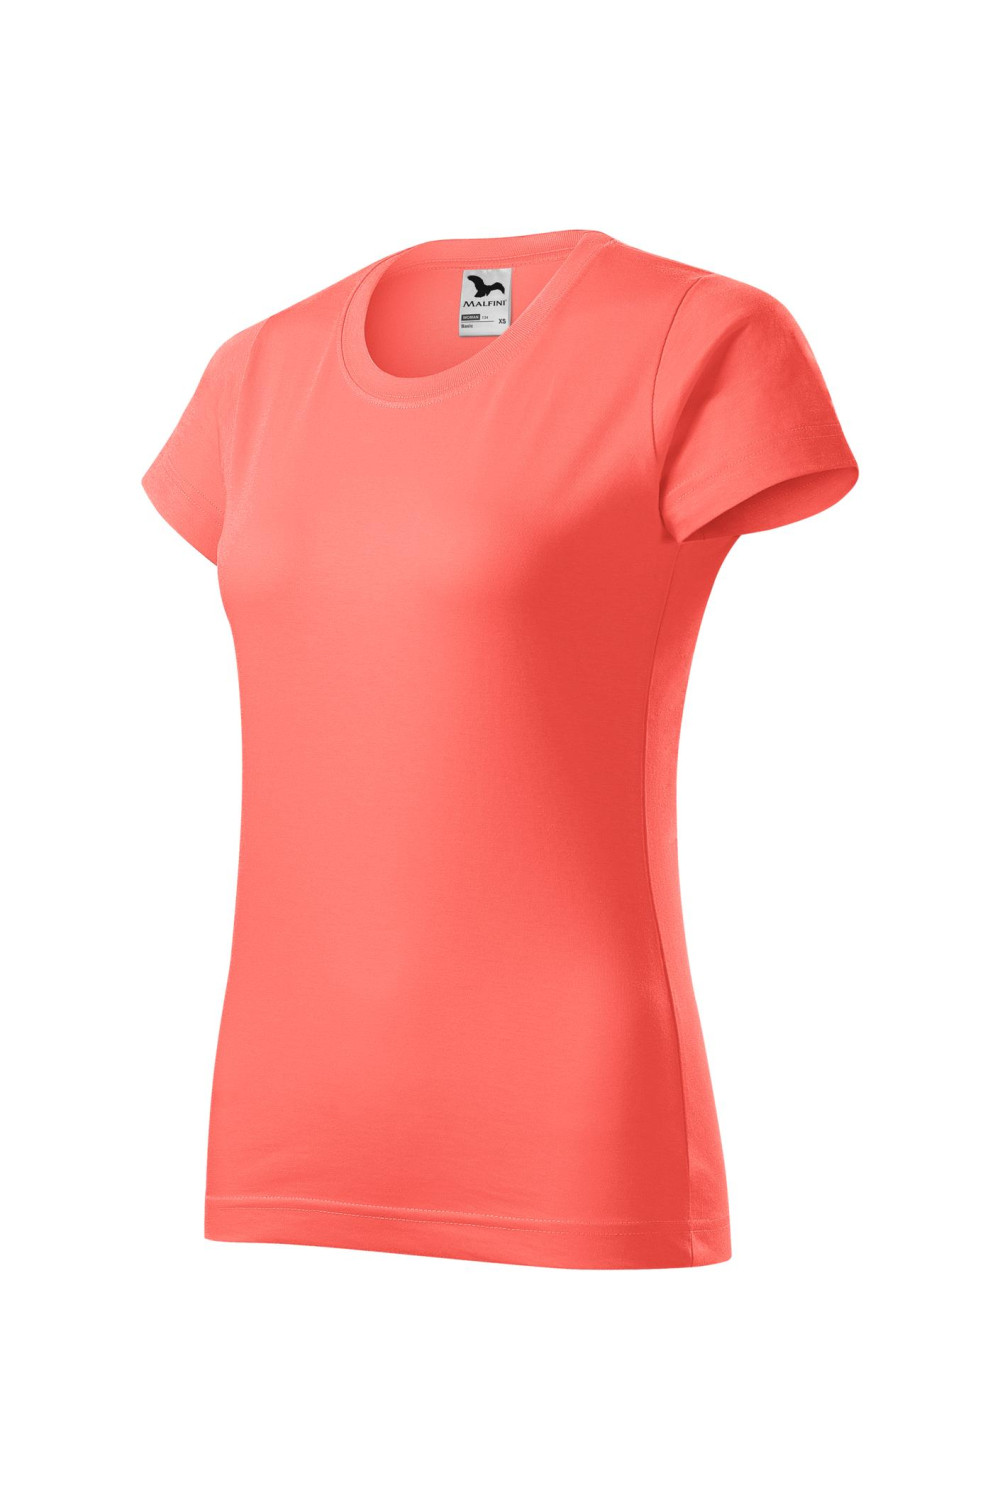 BASIC 134 MALFINI Koszulka damska 100% bawełna t-shirt coral